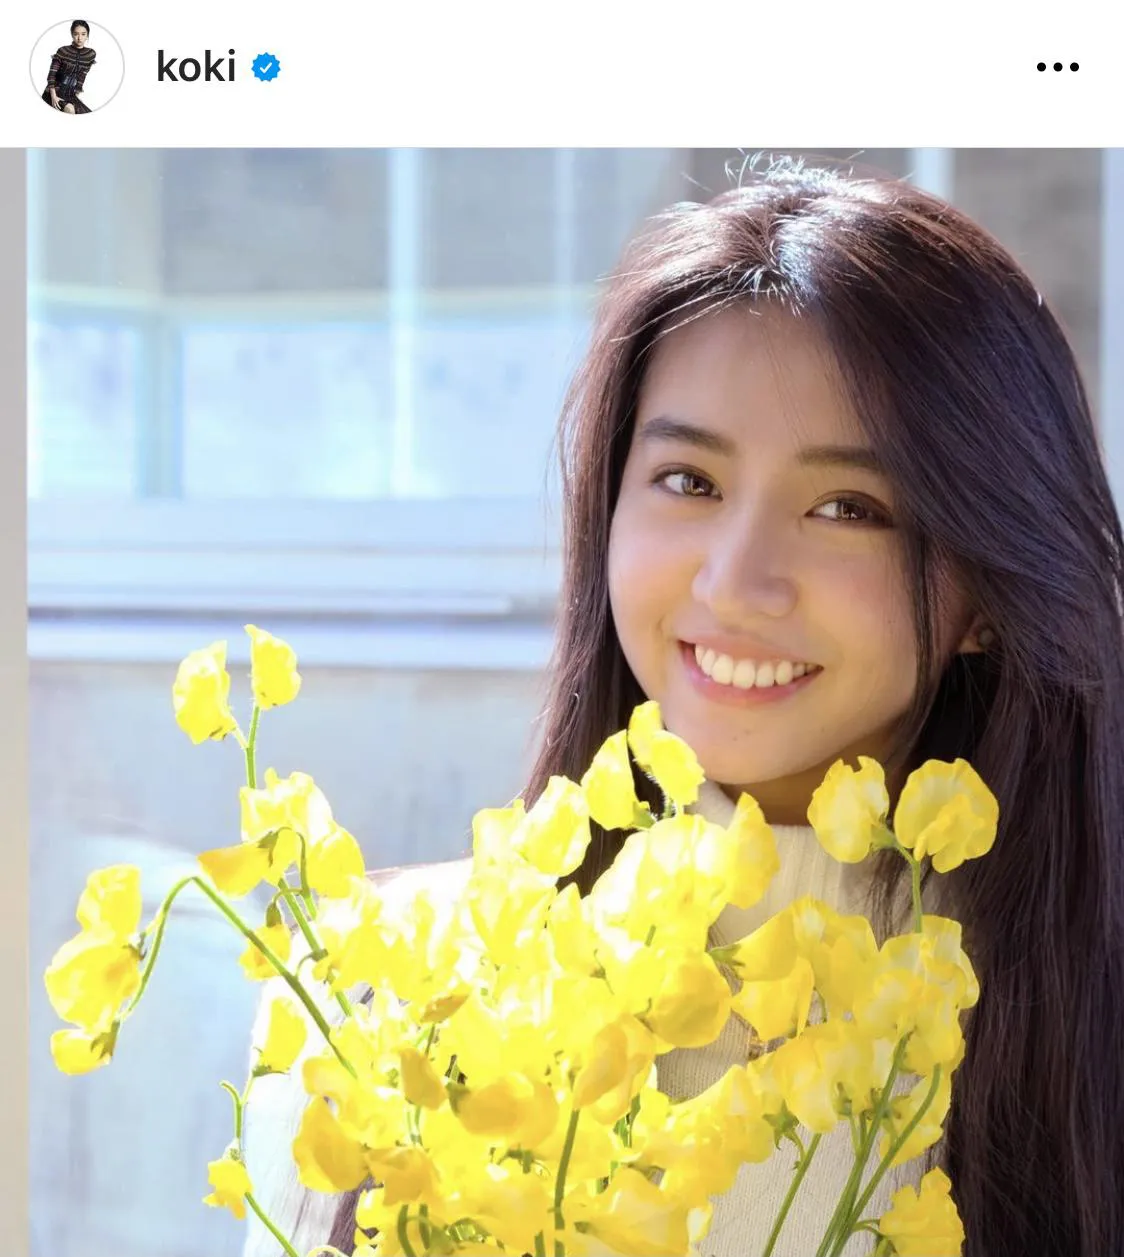 黄色の花束を手にはじけるような笑顔をみせるkoki,